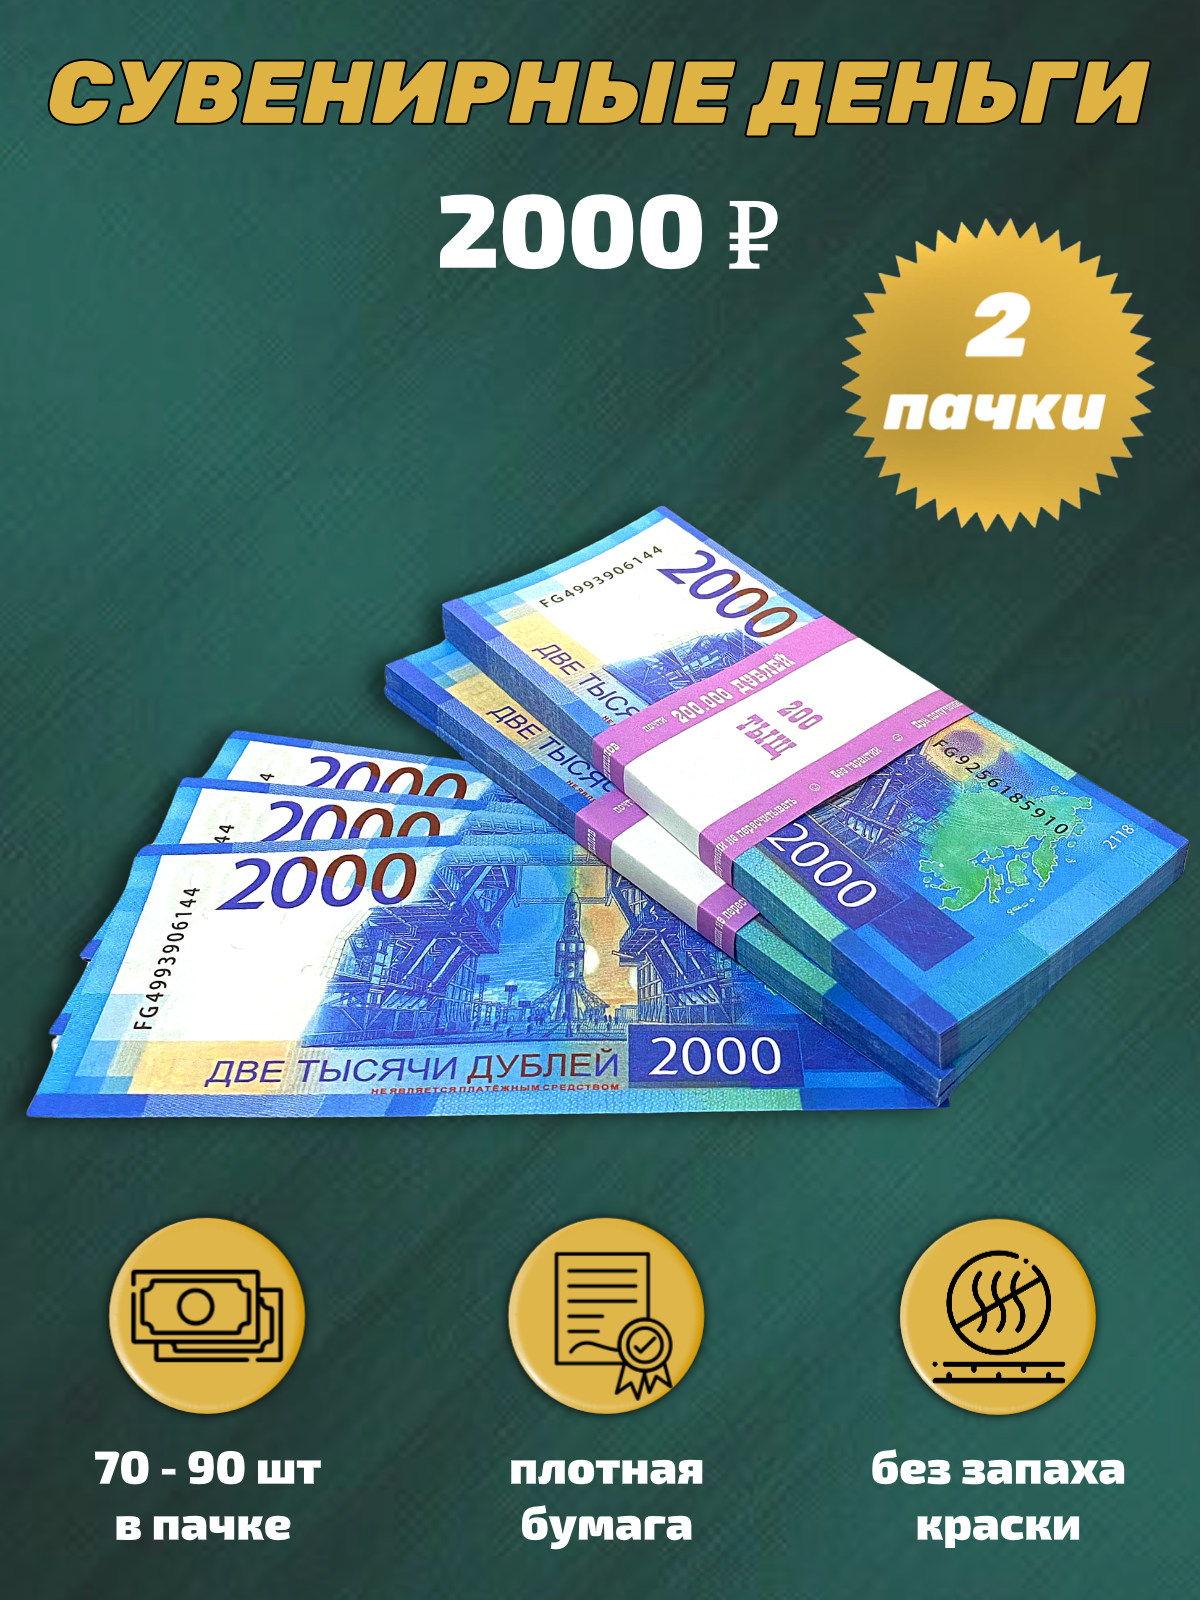 Сувенирные деньги, набор 2000 руб - 2 пачки